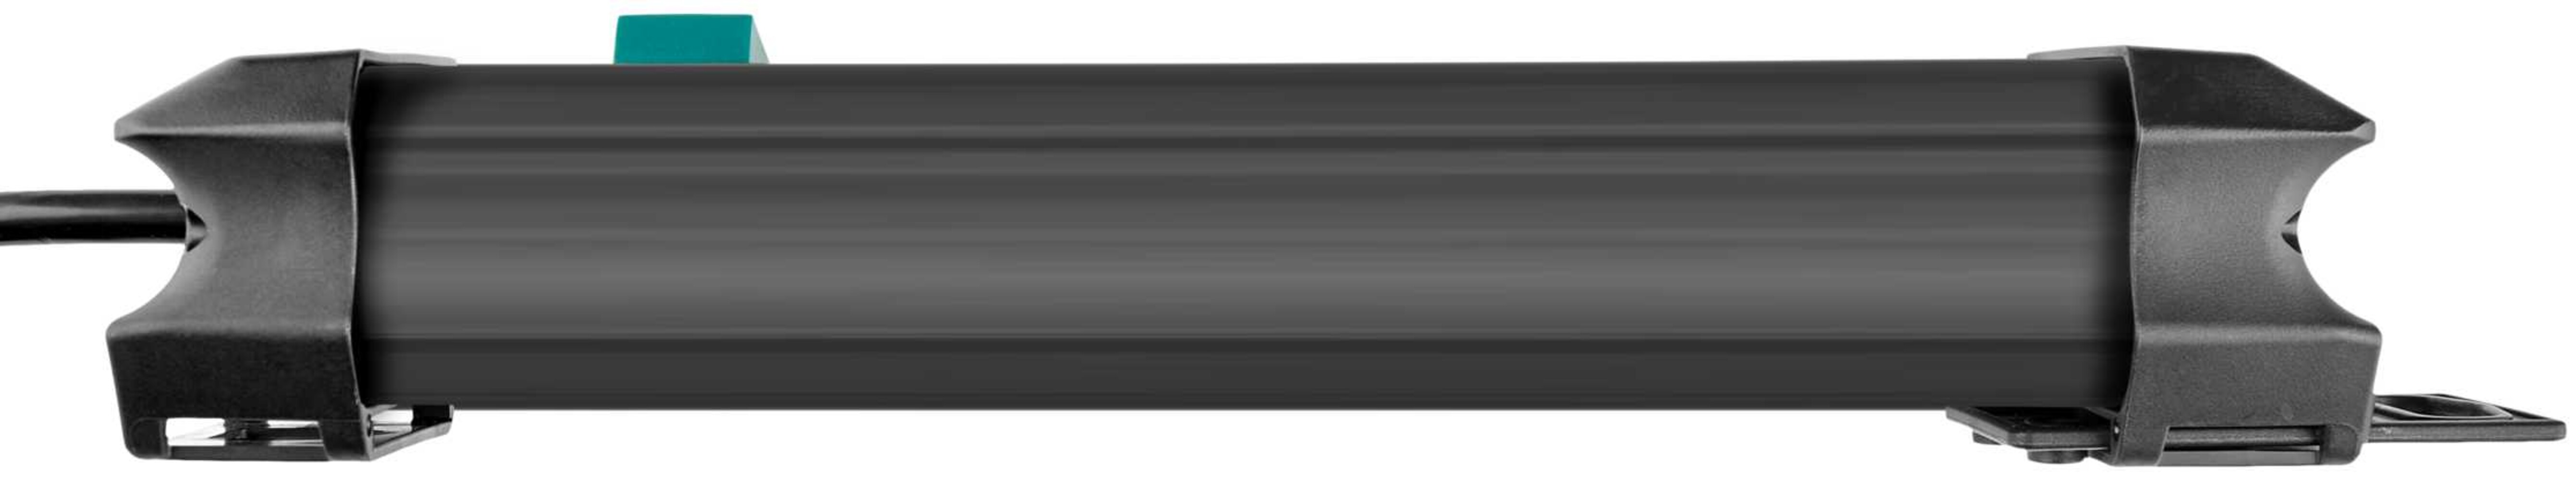 Hochwertige Steckdosenleiste von Brennenstuhl, Schwarz/Rot, Premium Line, 4-fach, Schalter, 1,8m Kabel